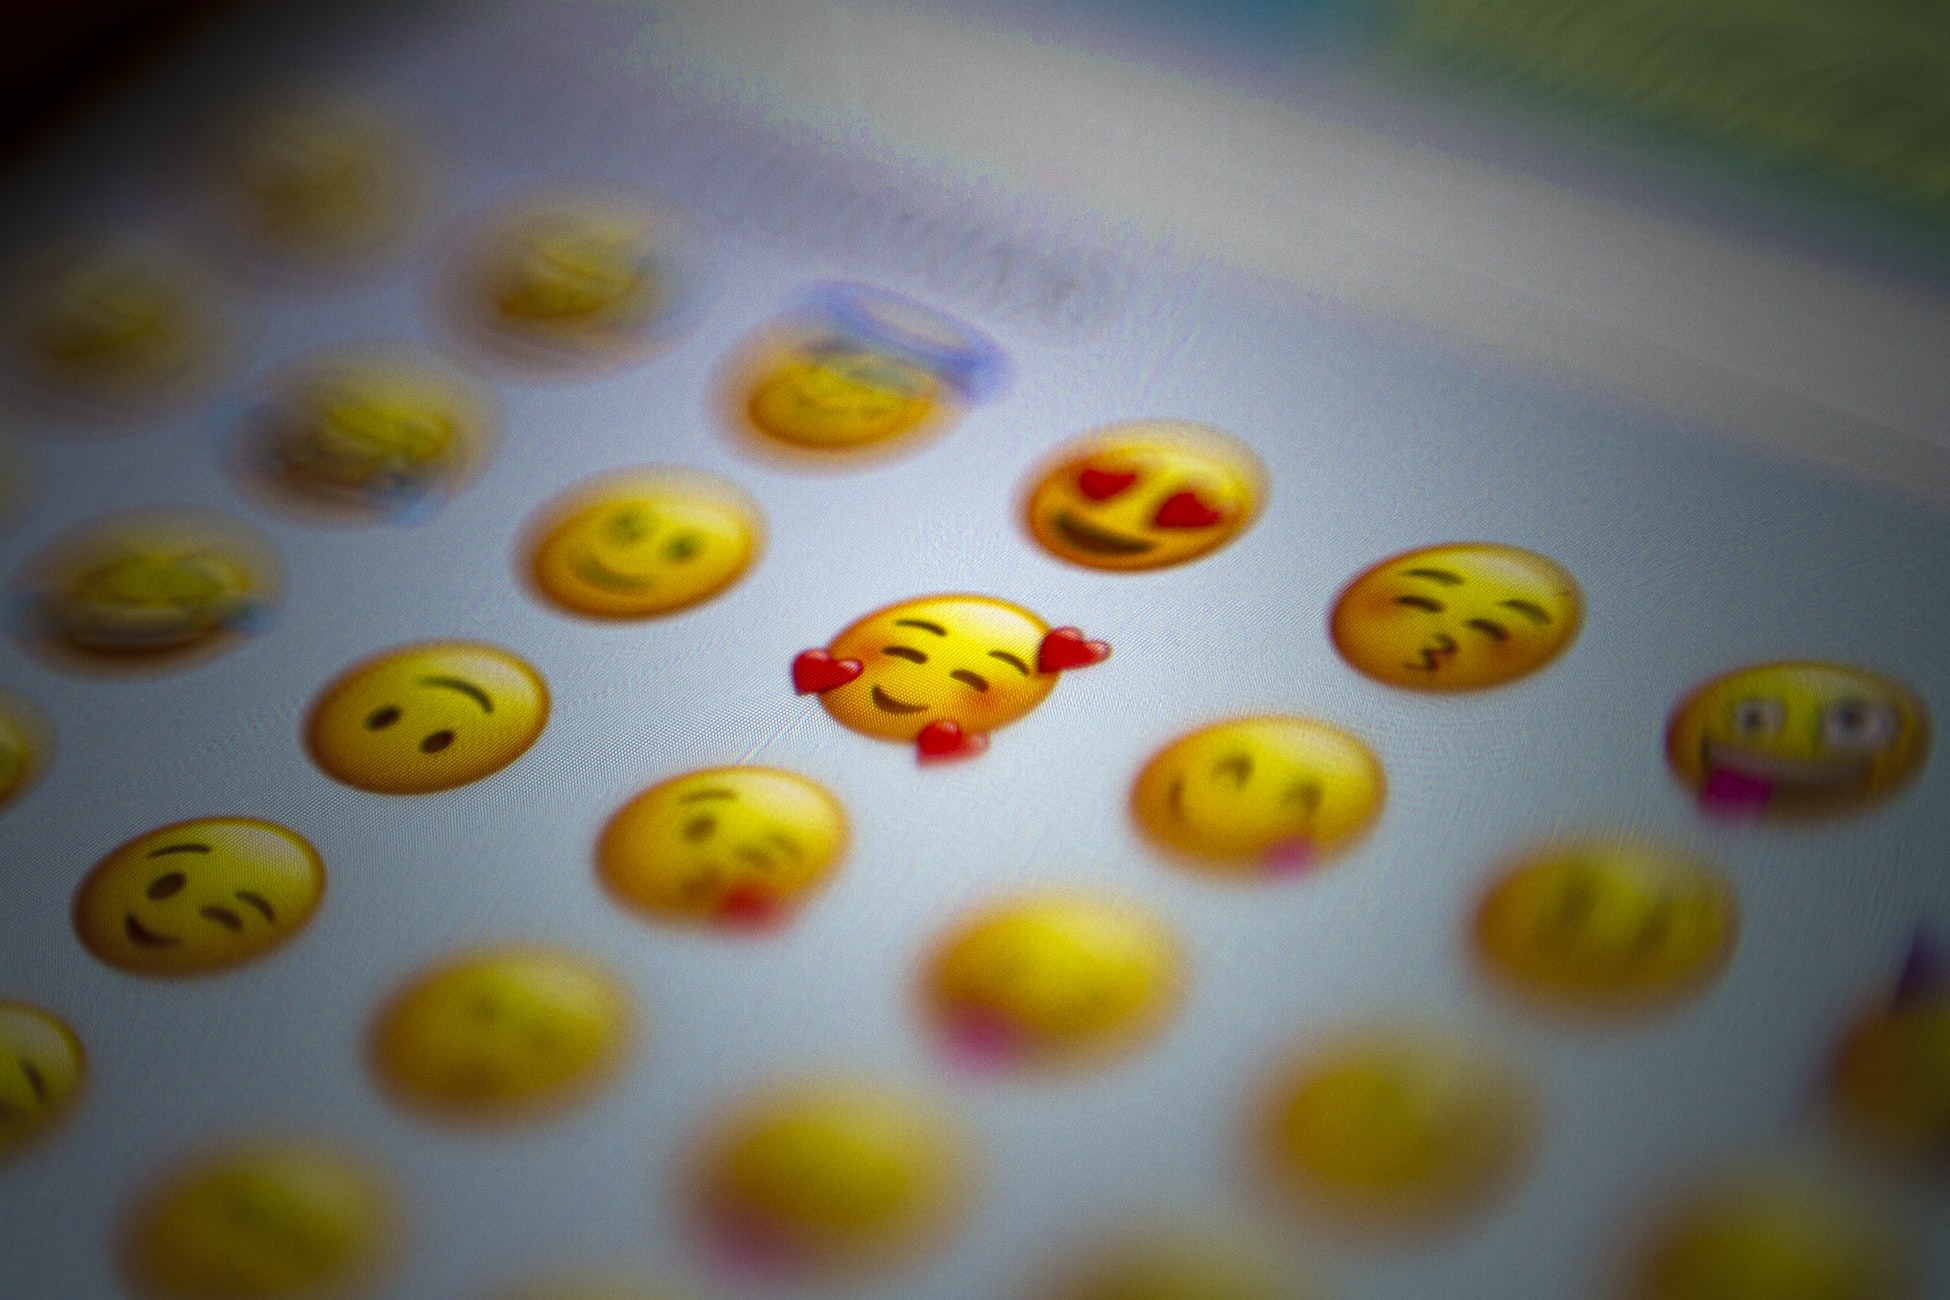 L’emoji a-t-il sa place dans les stratégies de communication ? 